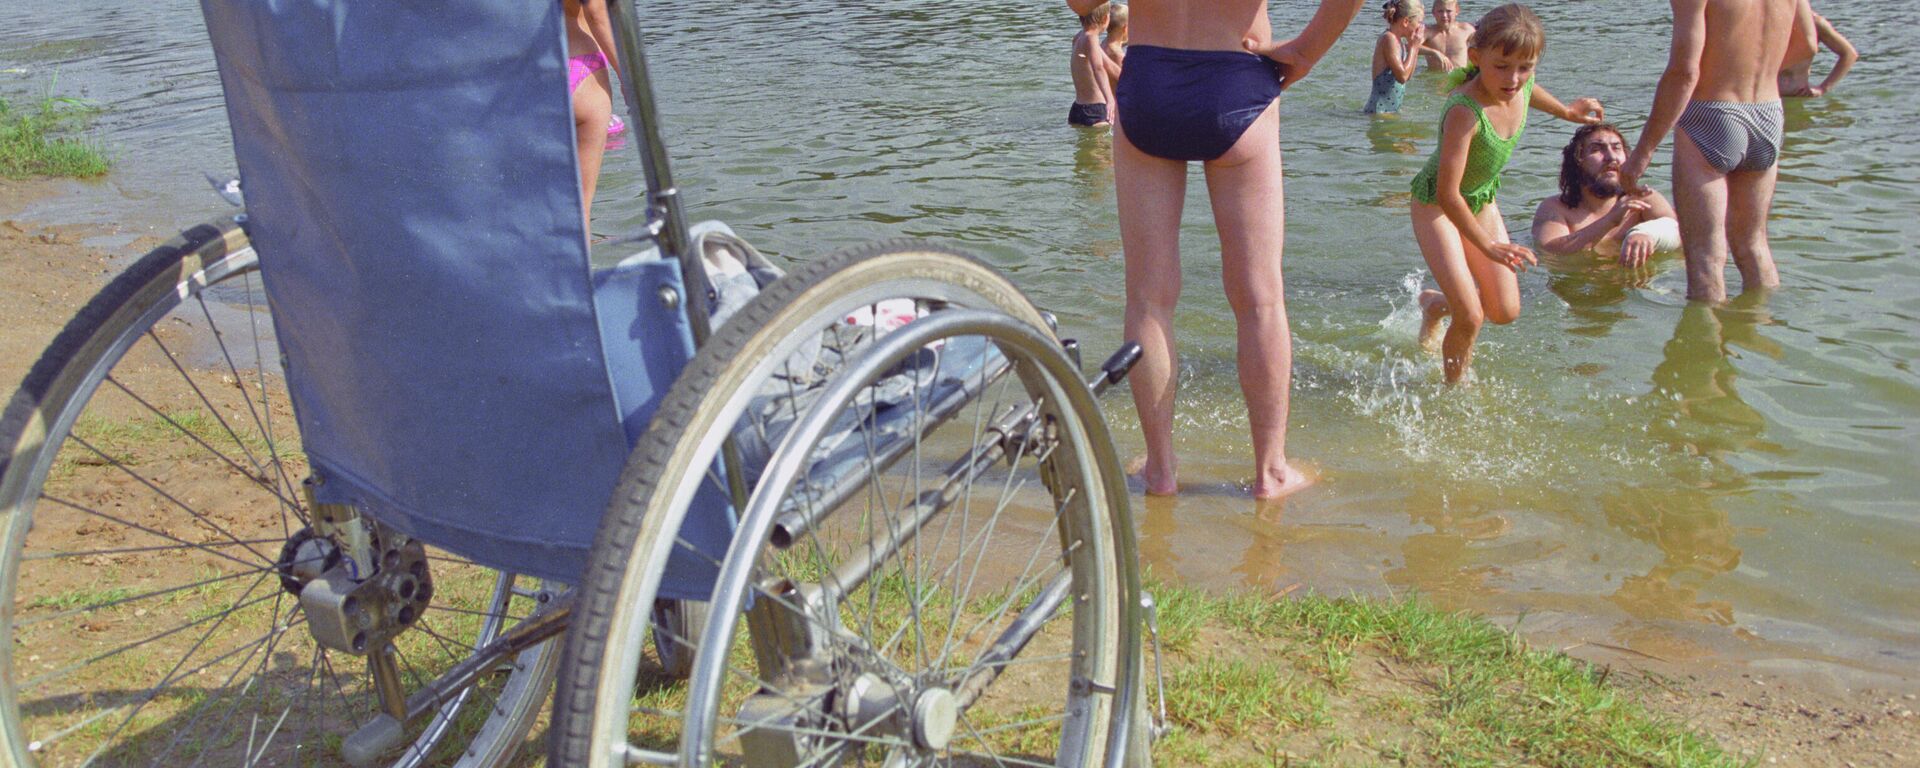 Инвалидная коляска на пляже - Sputnik Латвия, 1920, 21.12.2021